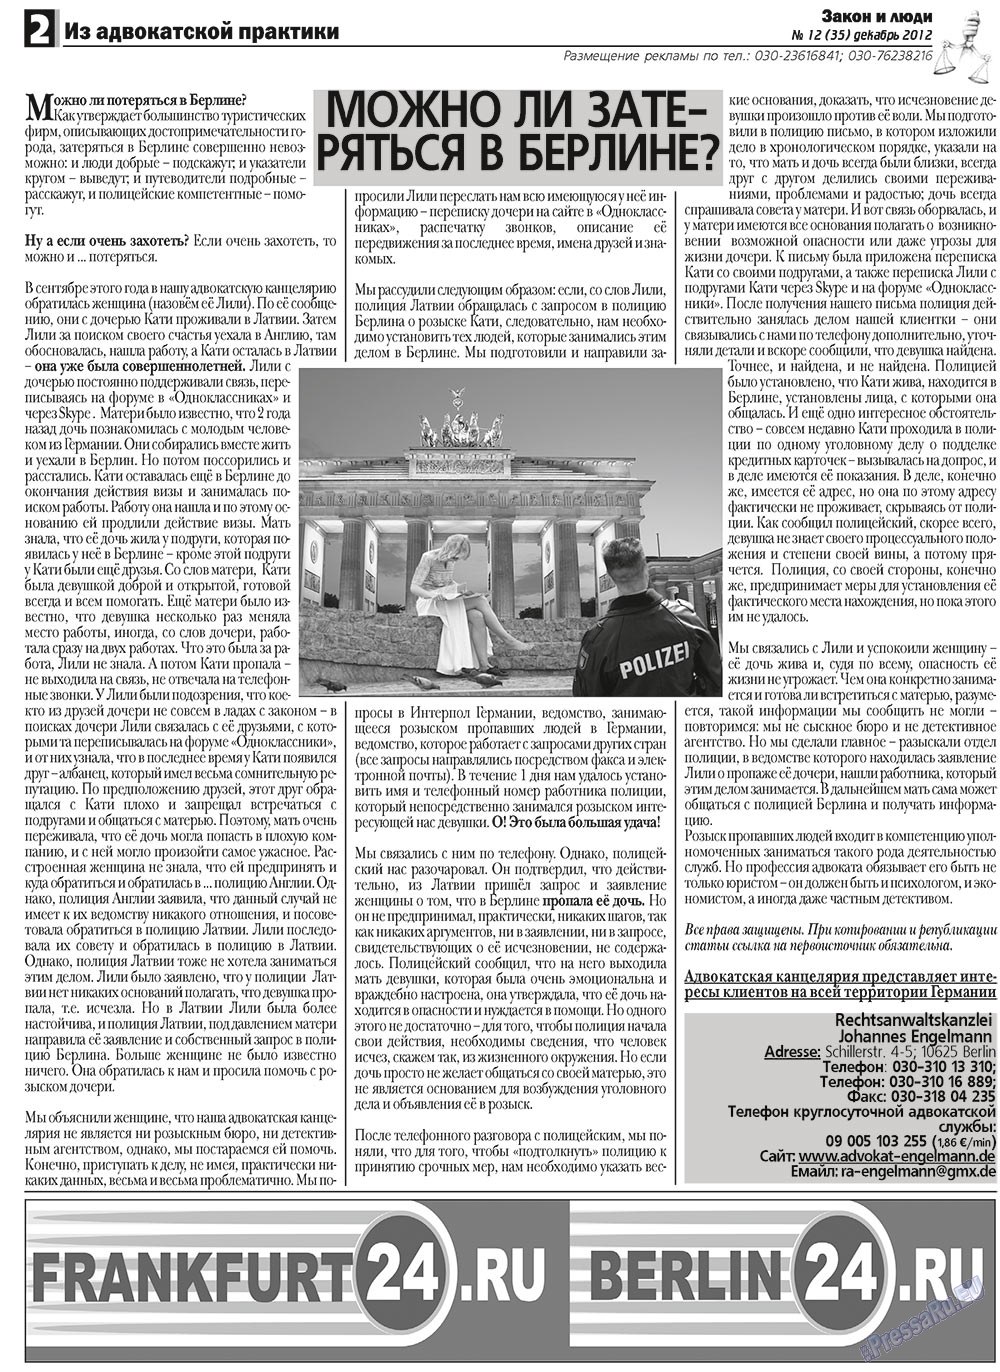 Закон и люди, газета. 2012 №12 стр.2